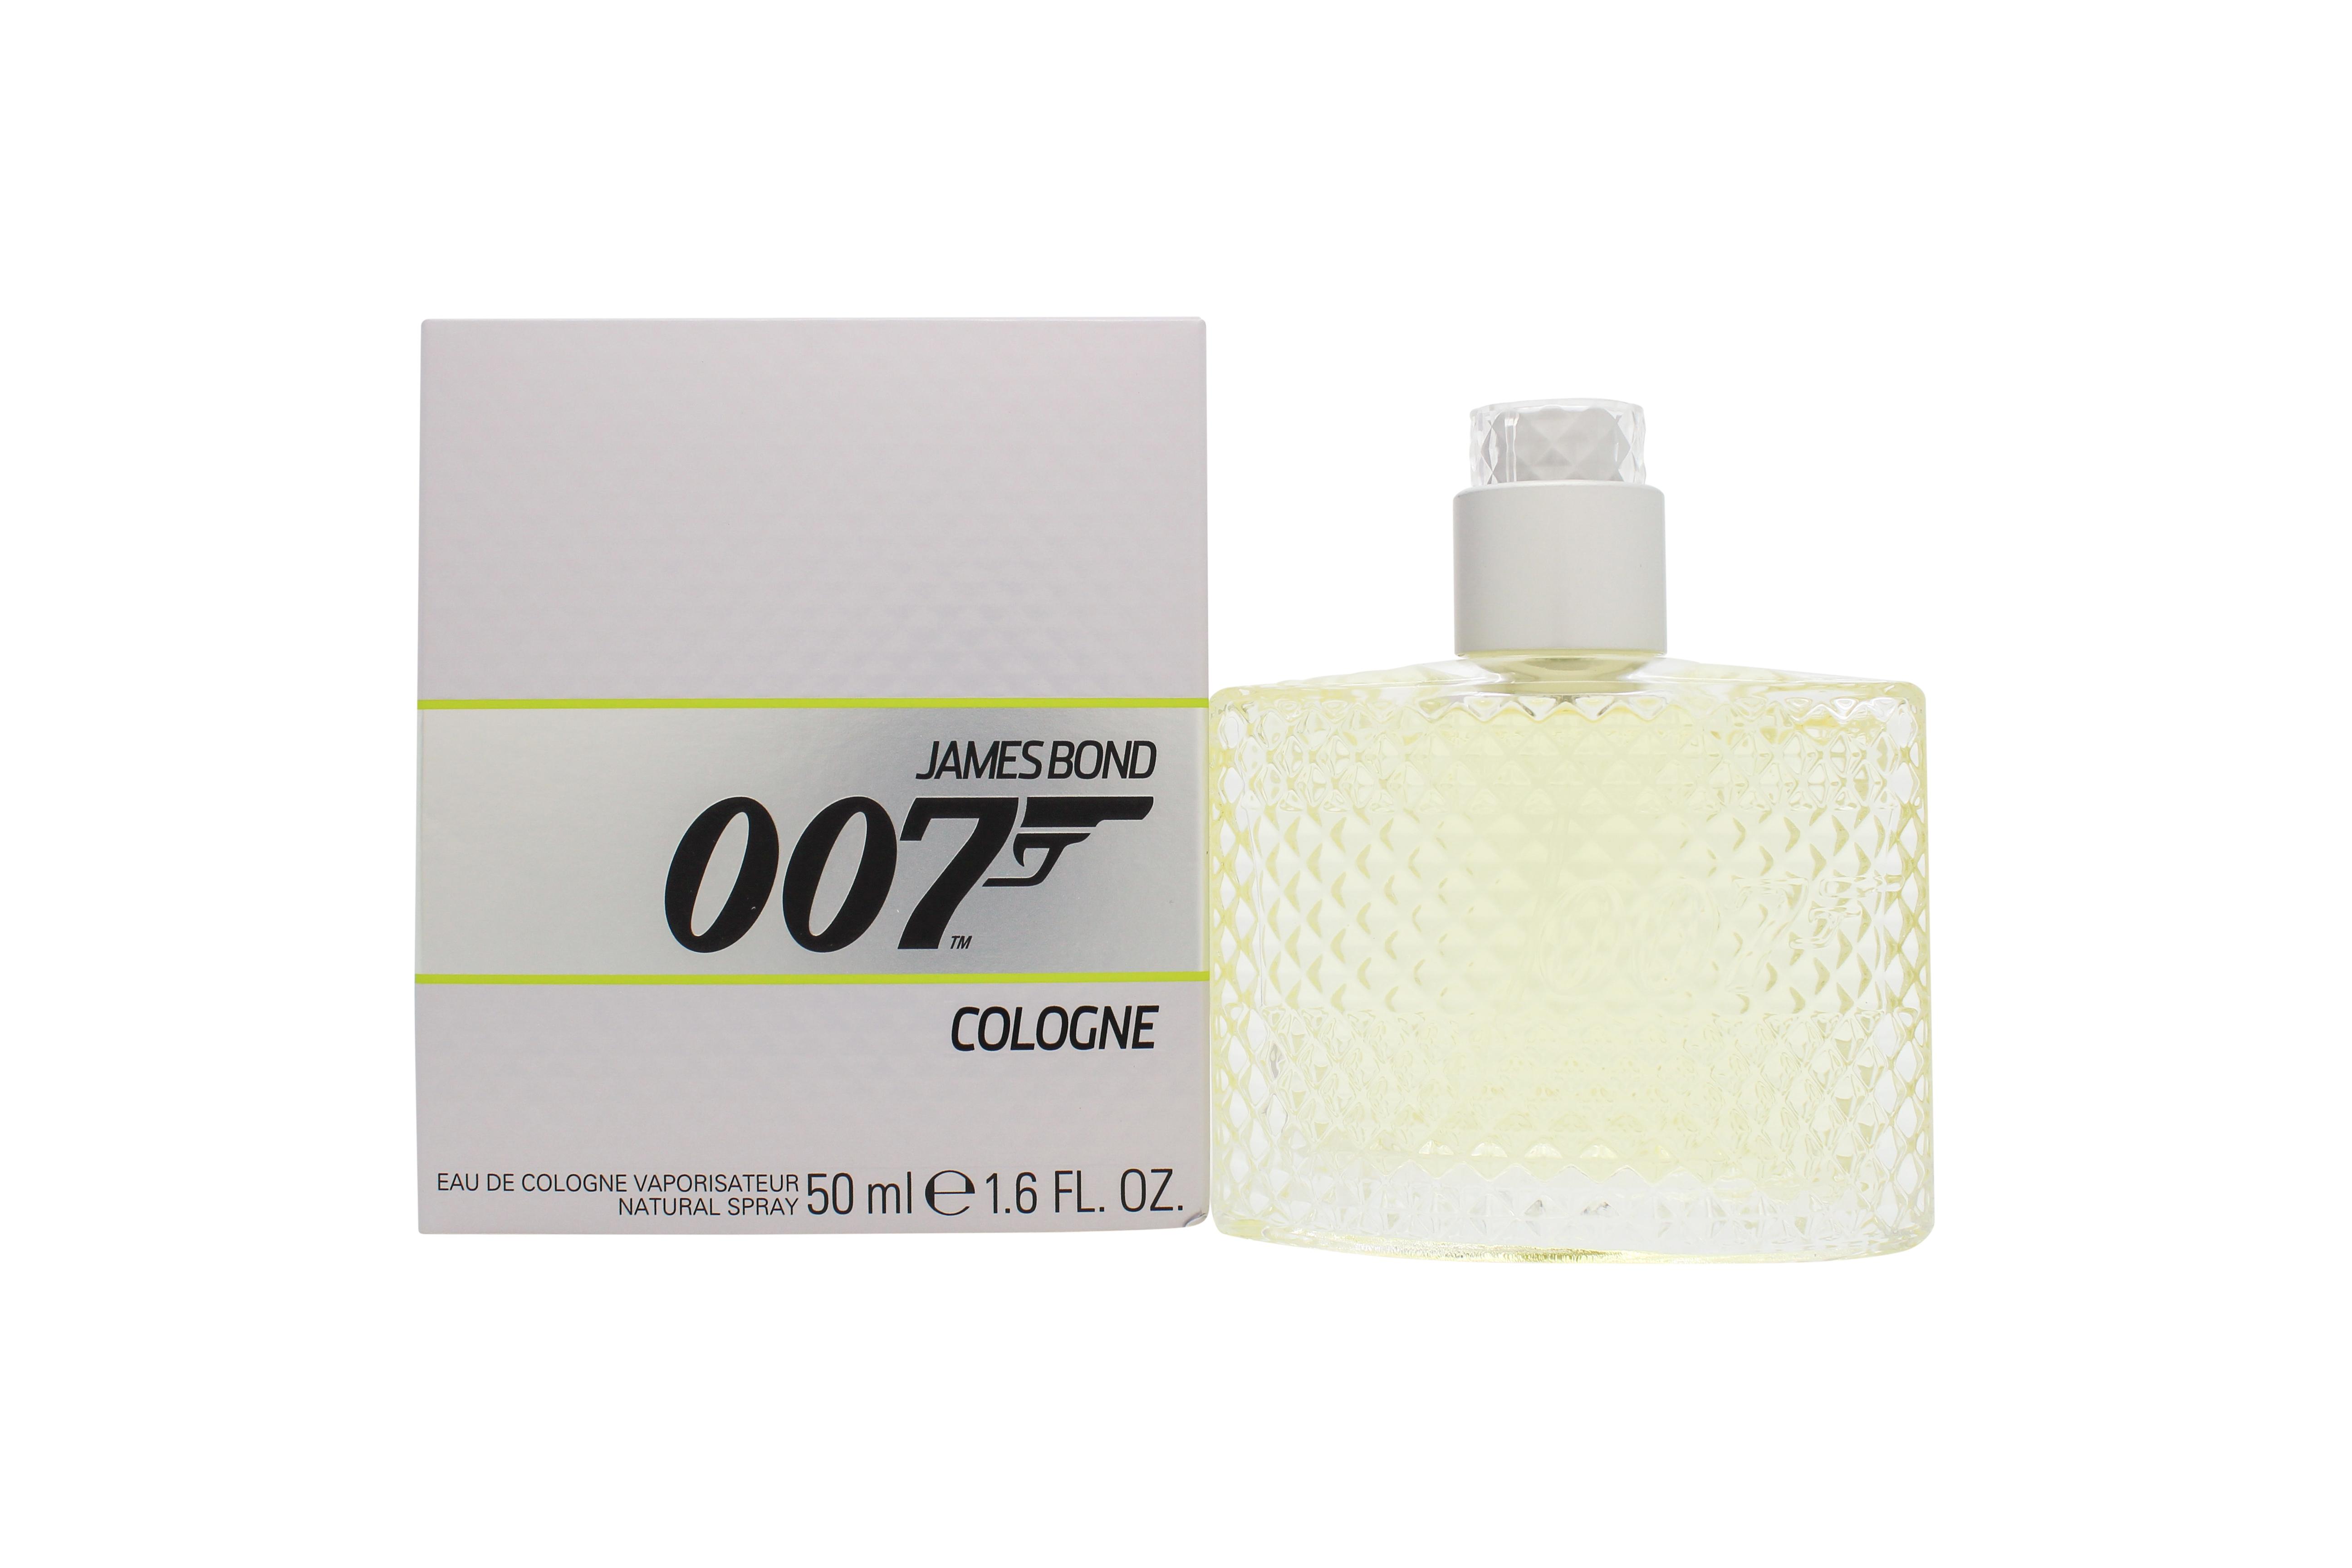 James Bond 007 Cologne Eau de Cologne 50ml Spray